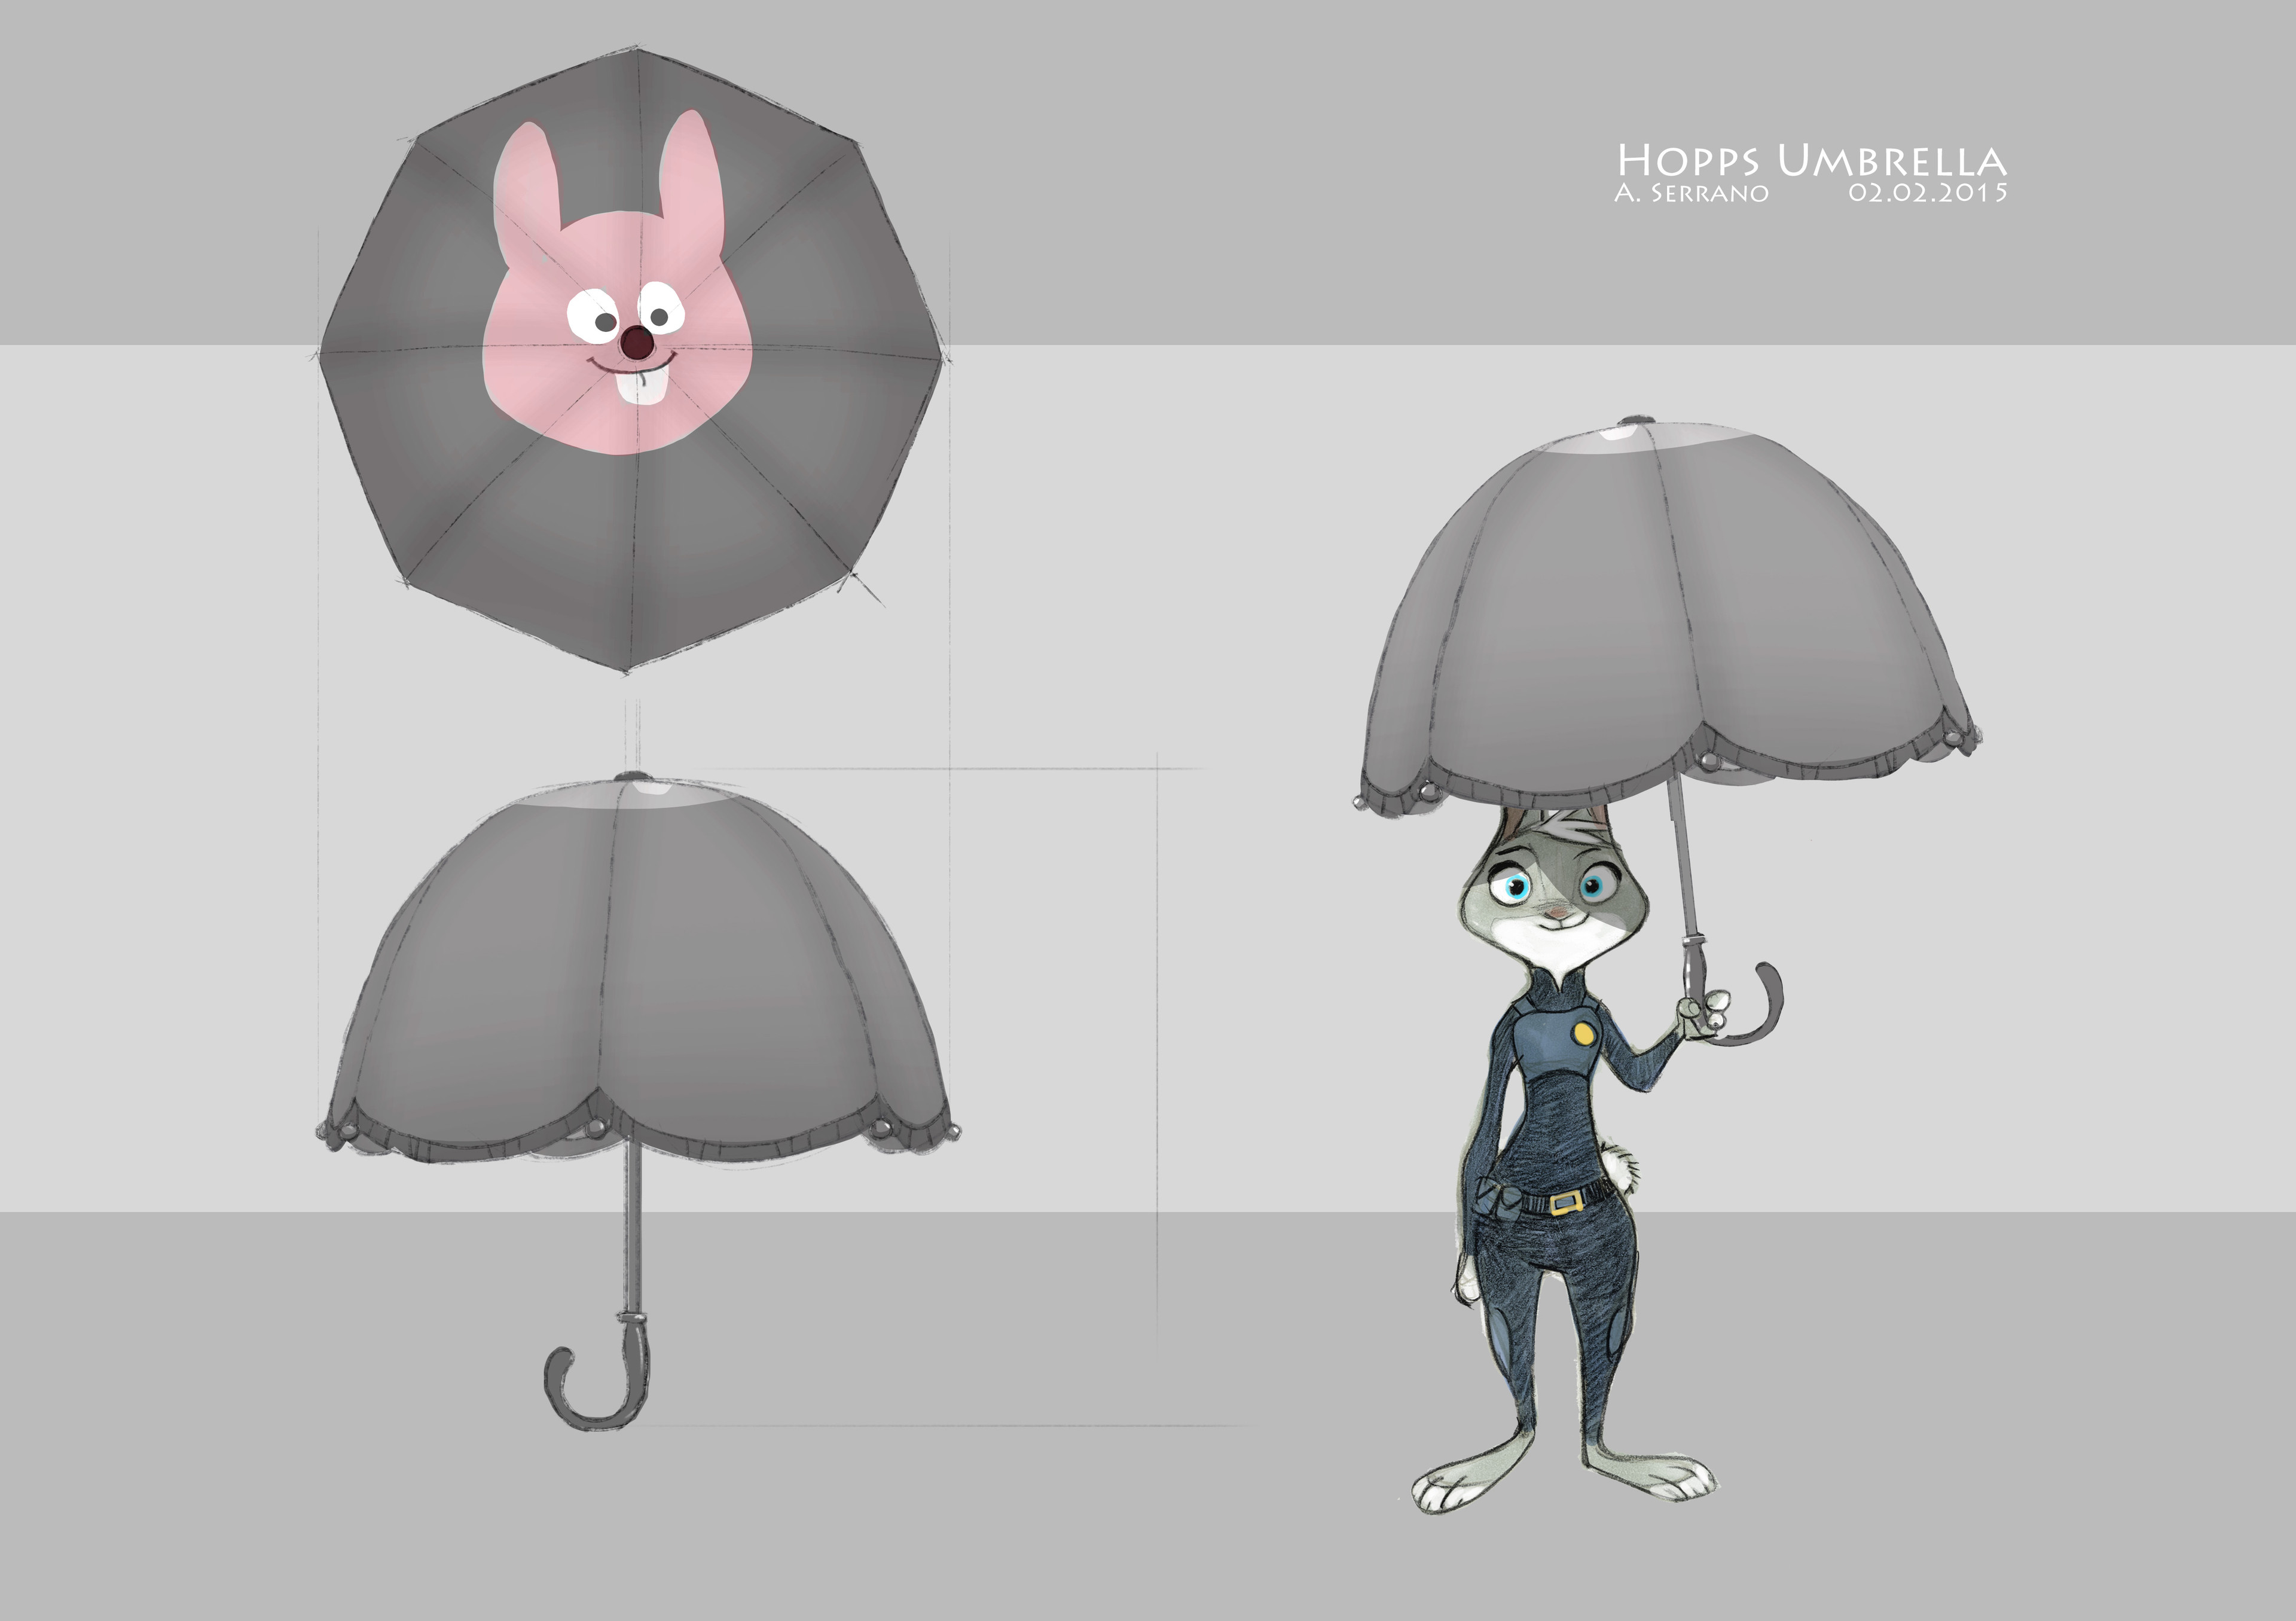 Judy's umbrella